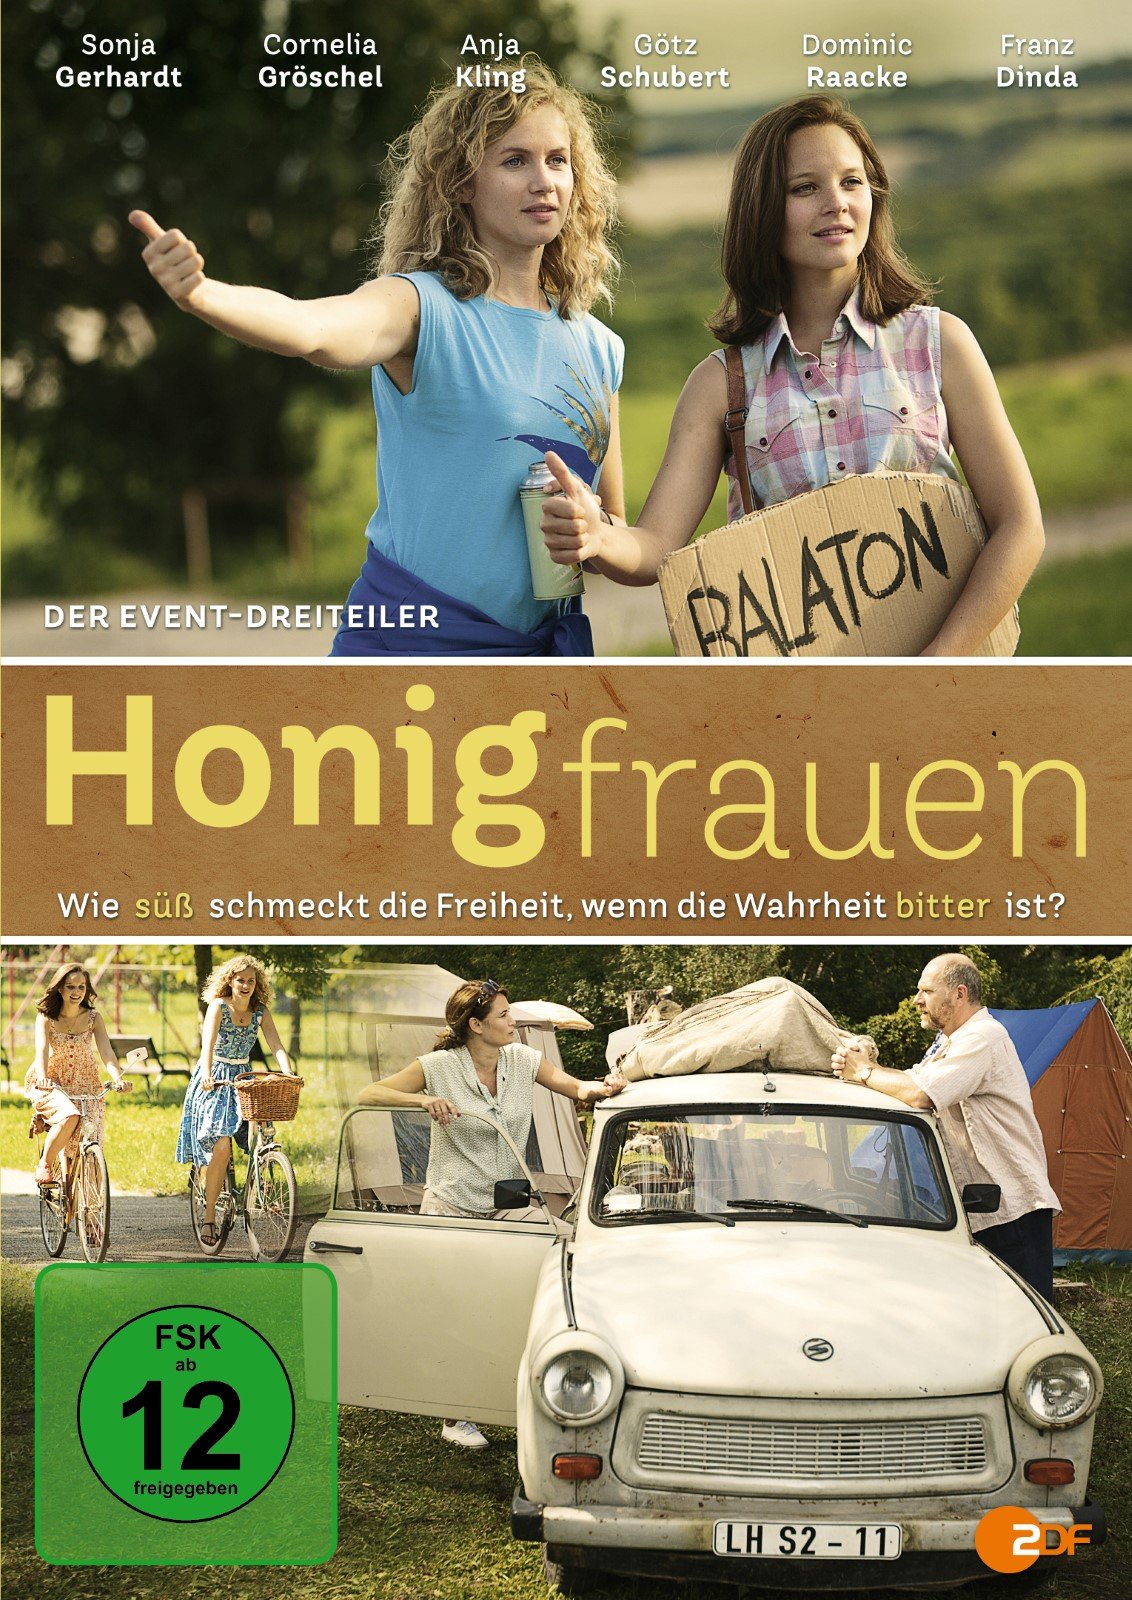 [心得] 蜜糖女郎 Honigfrauen (雷) ZDF 德國時代劇 2017